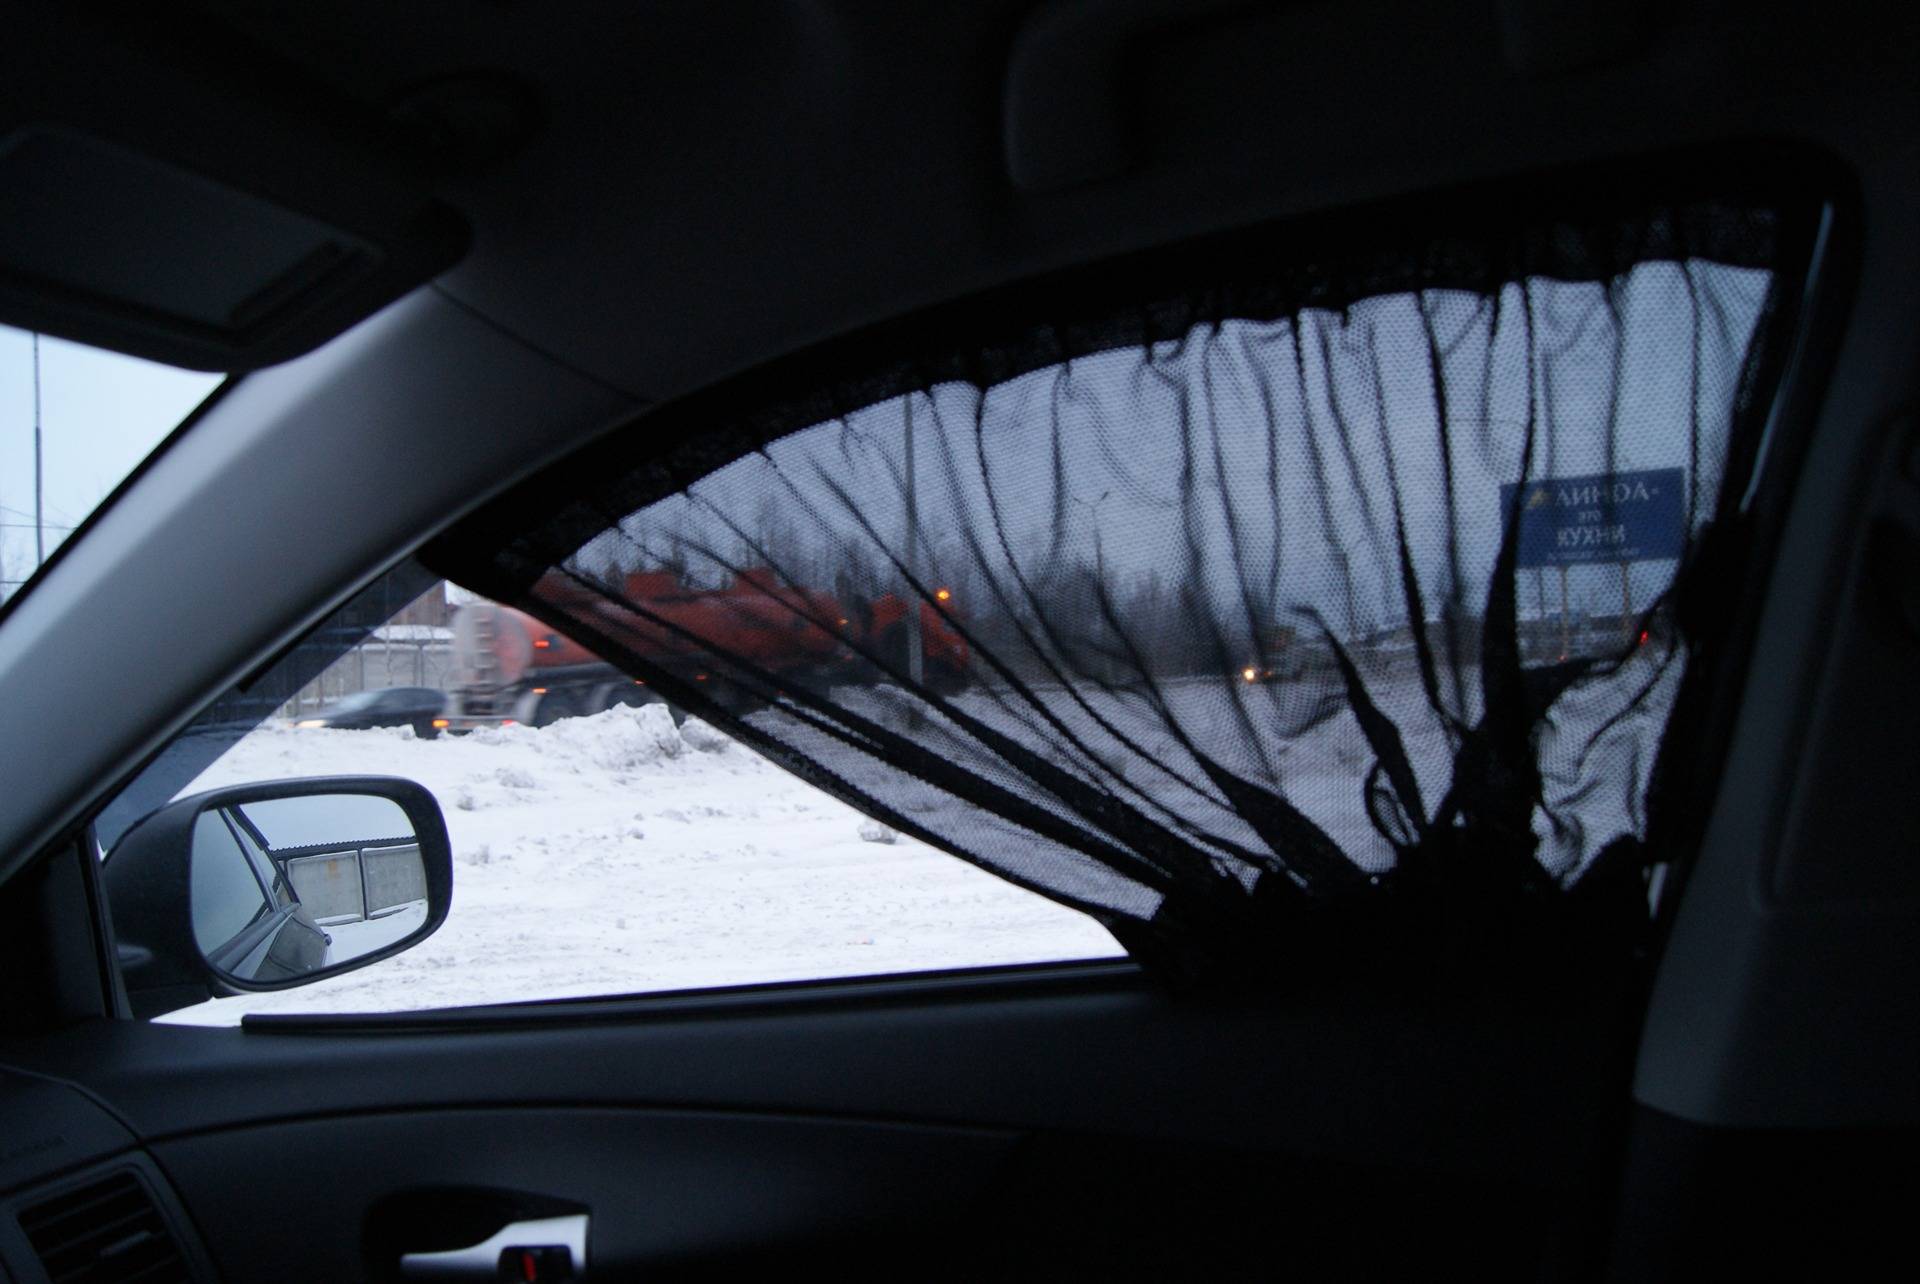 Шторки на автомобильных стёклах: нюансы использования, штраф за автошторки на стёклах, полезные советы